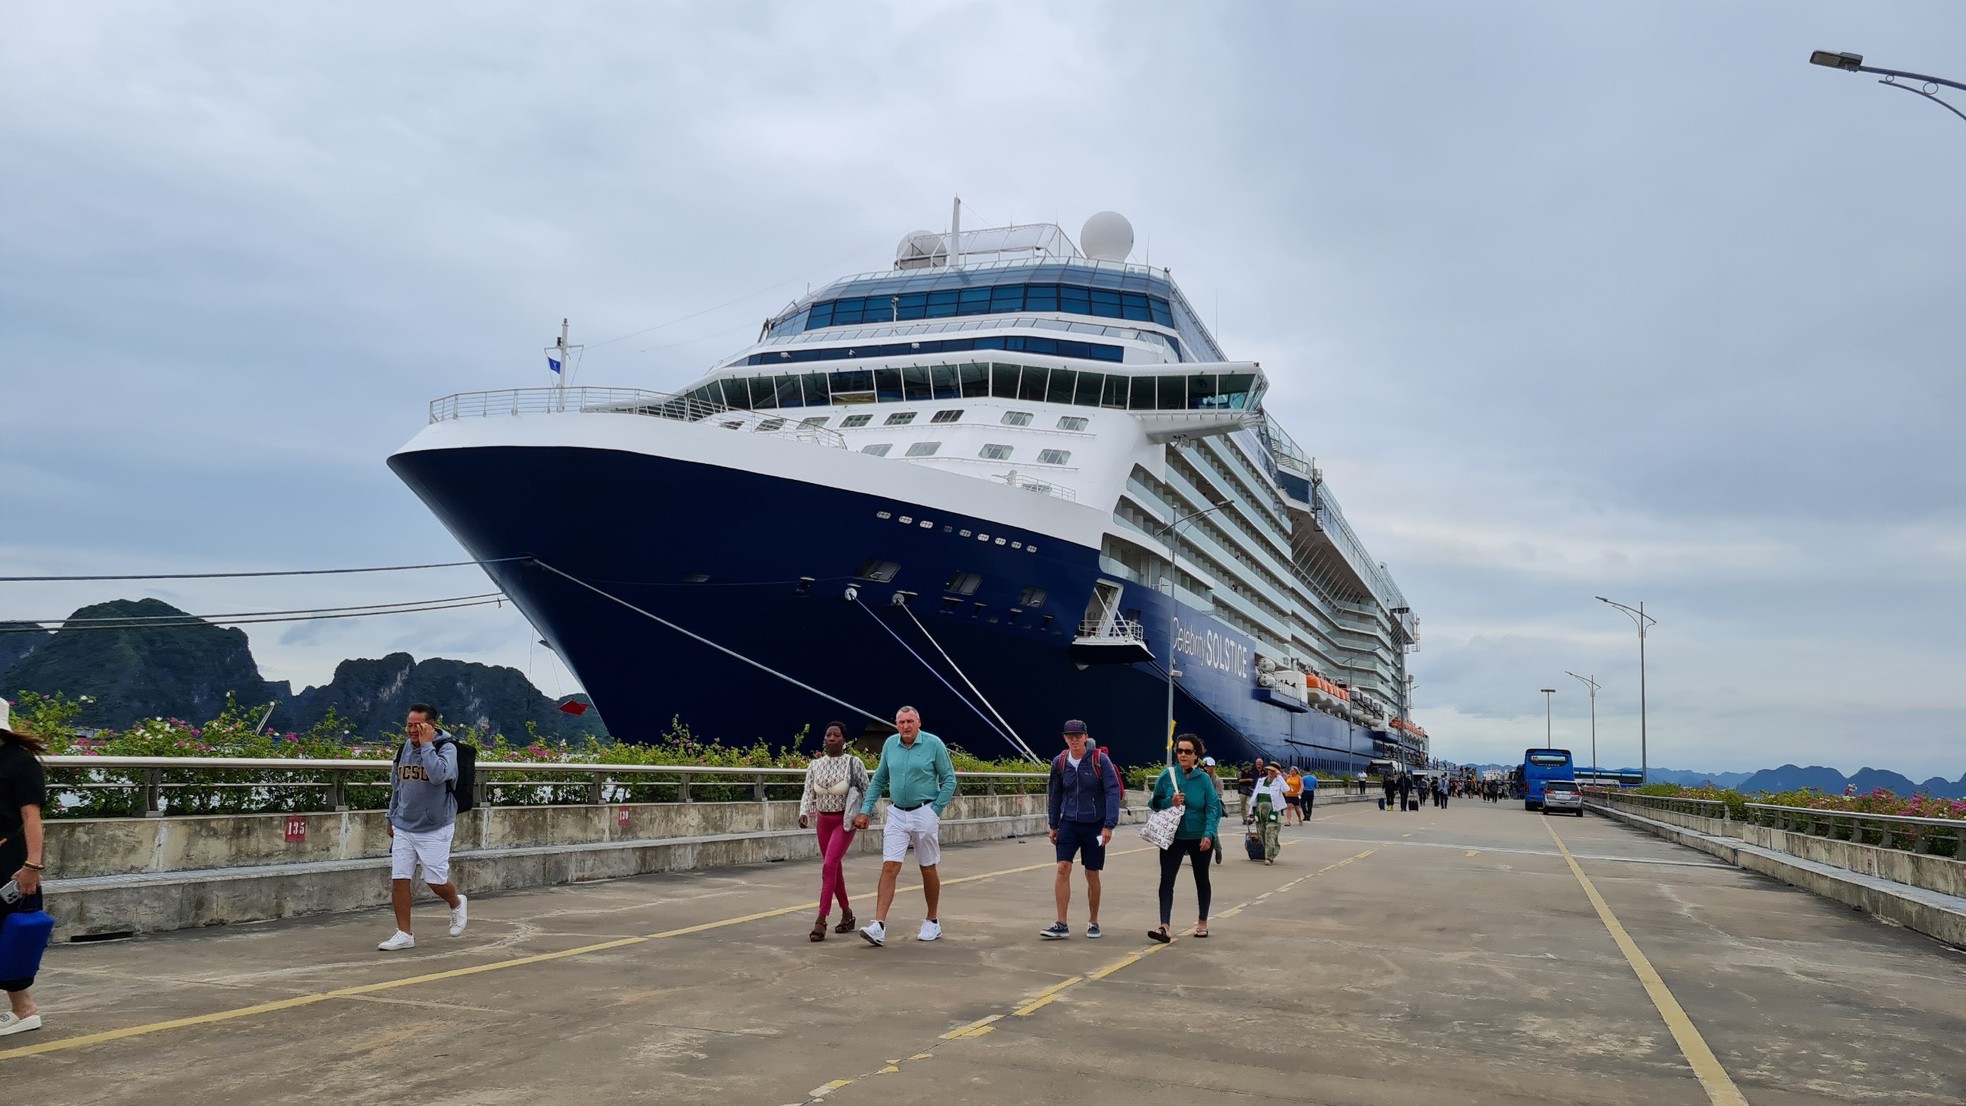 Hơn 2.600 khách quốc tế đến Hạ Long bằng siêu du thuyền - Ảnh 2.